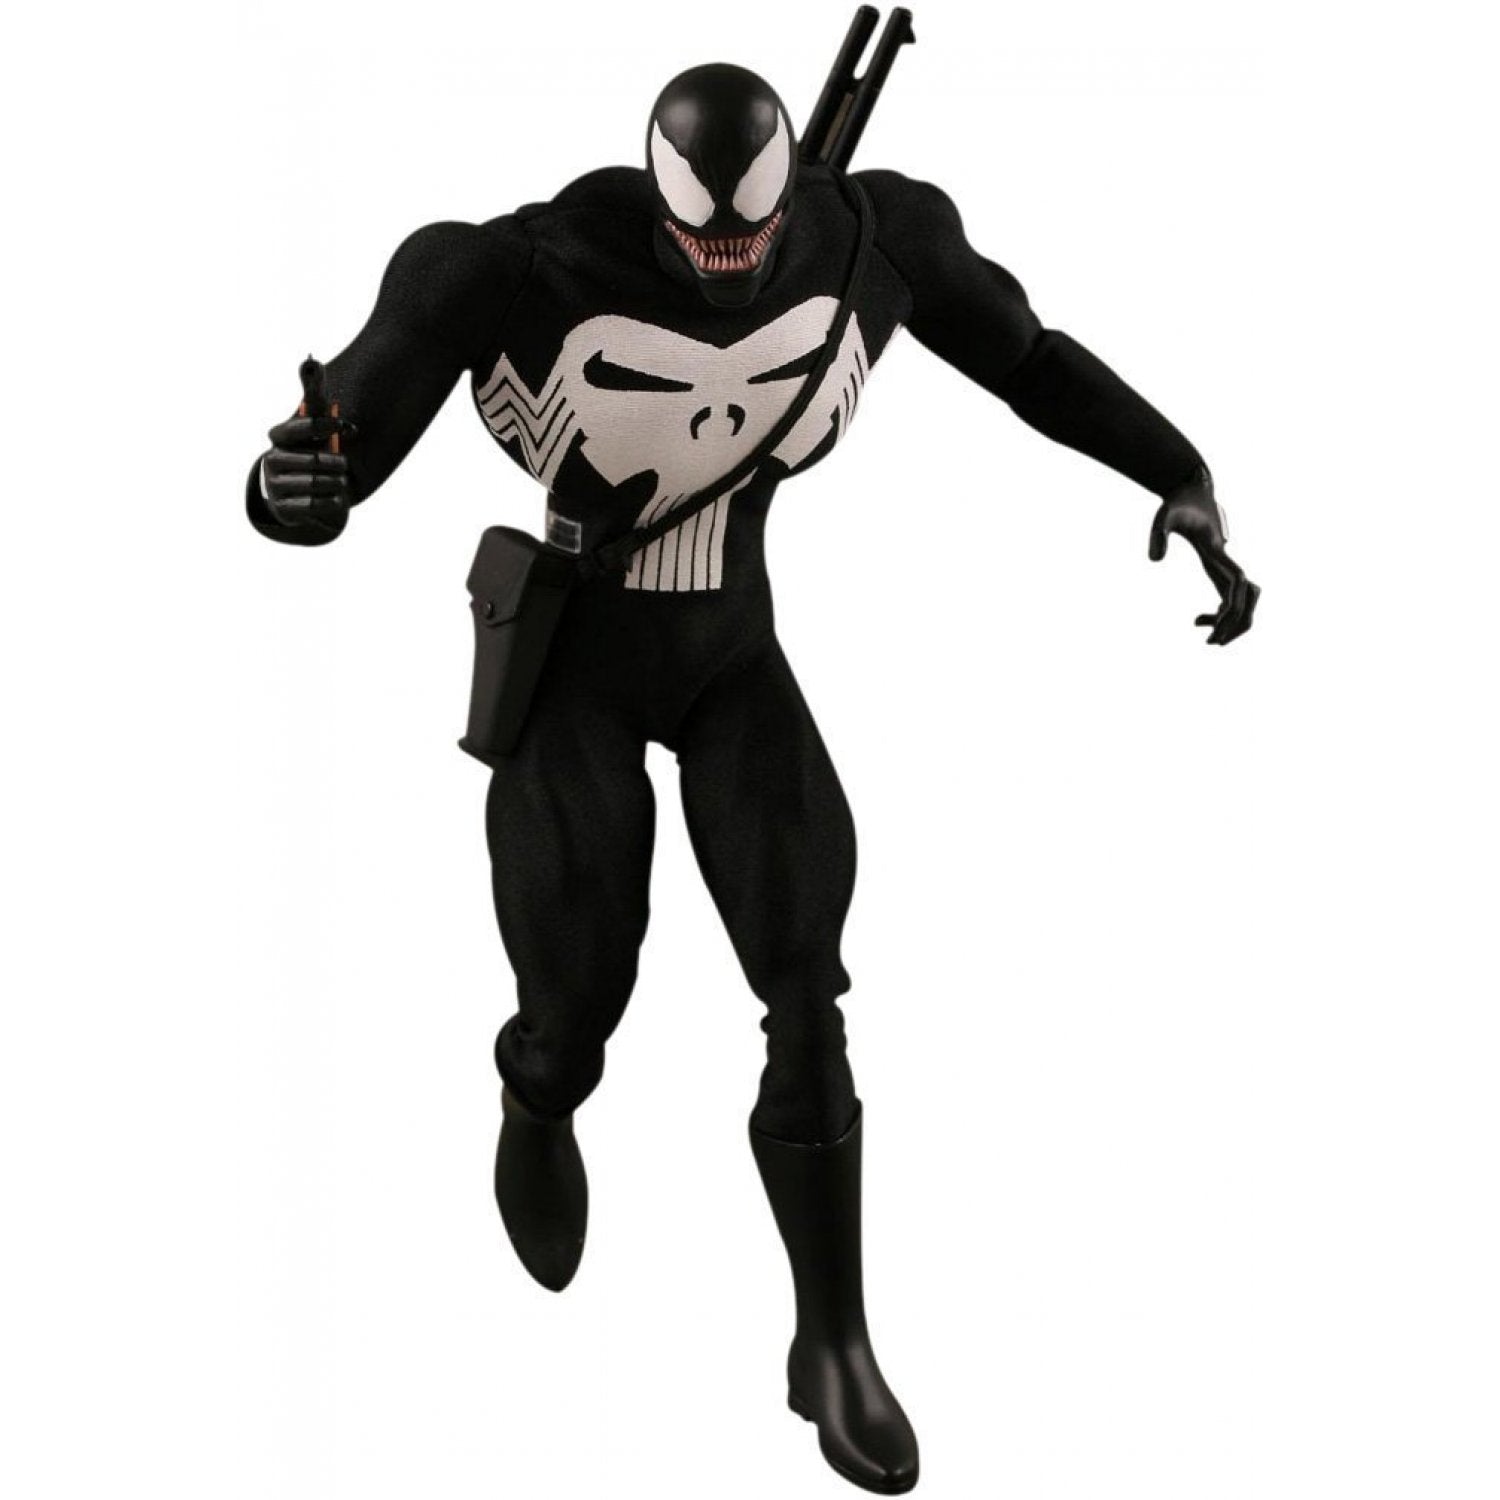 Medicom 1/6 RAH Marvel Venom (Punisher Ver.) 12" Real Action Heroes Action Figure 4